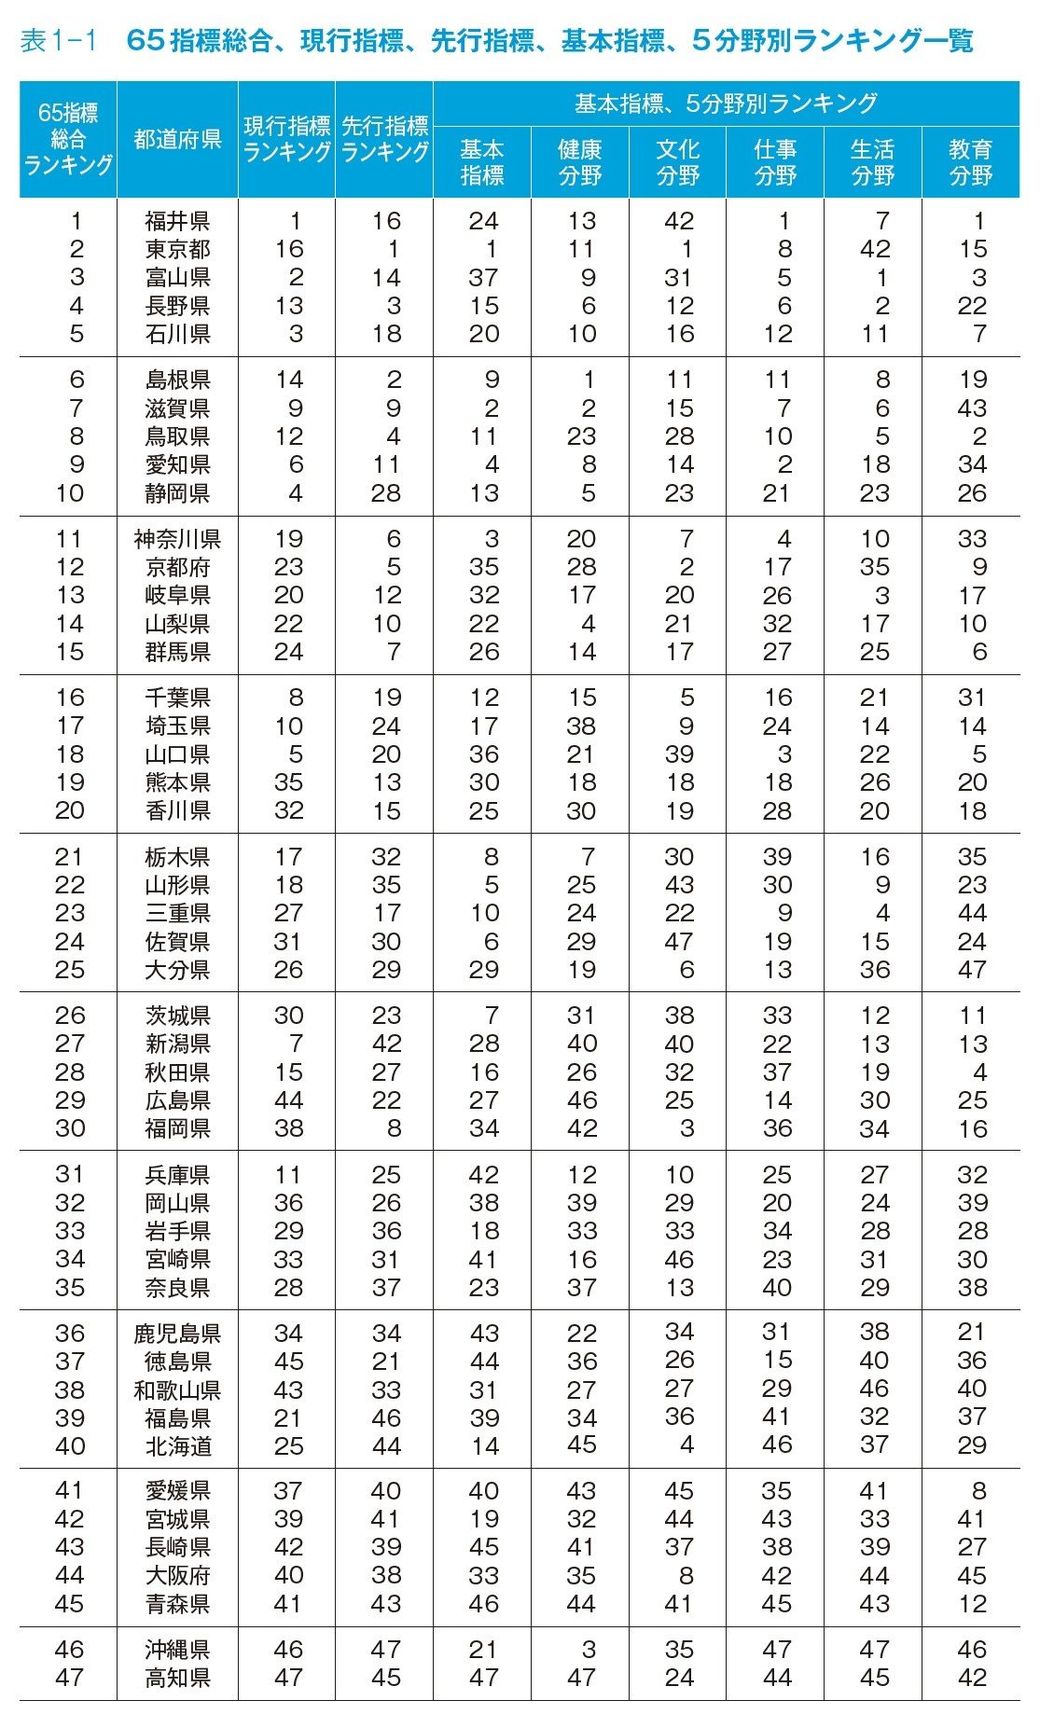 47都道府県 幸福度 ランキング2016年版 住みよさランキング 東洋経済オンライン 経済ニュースの新基準